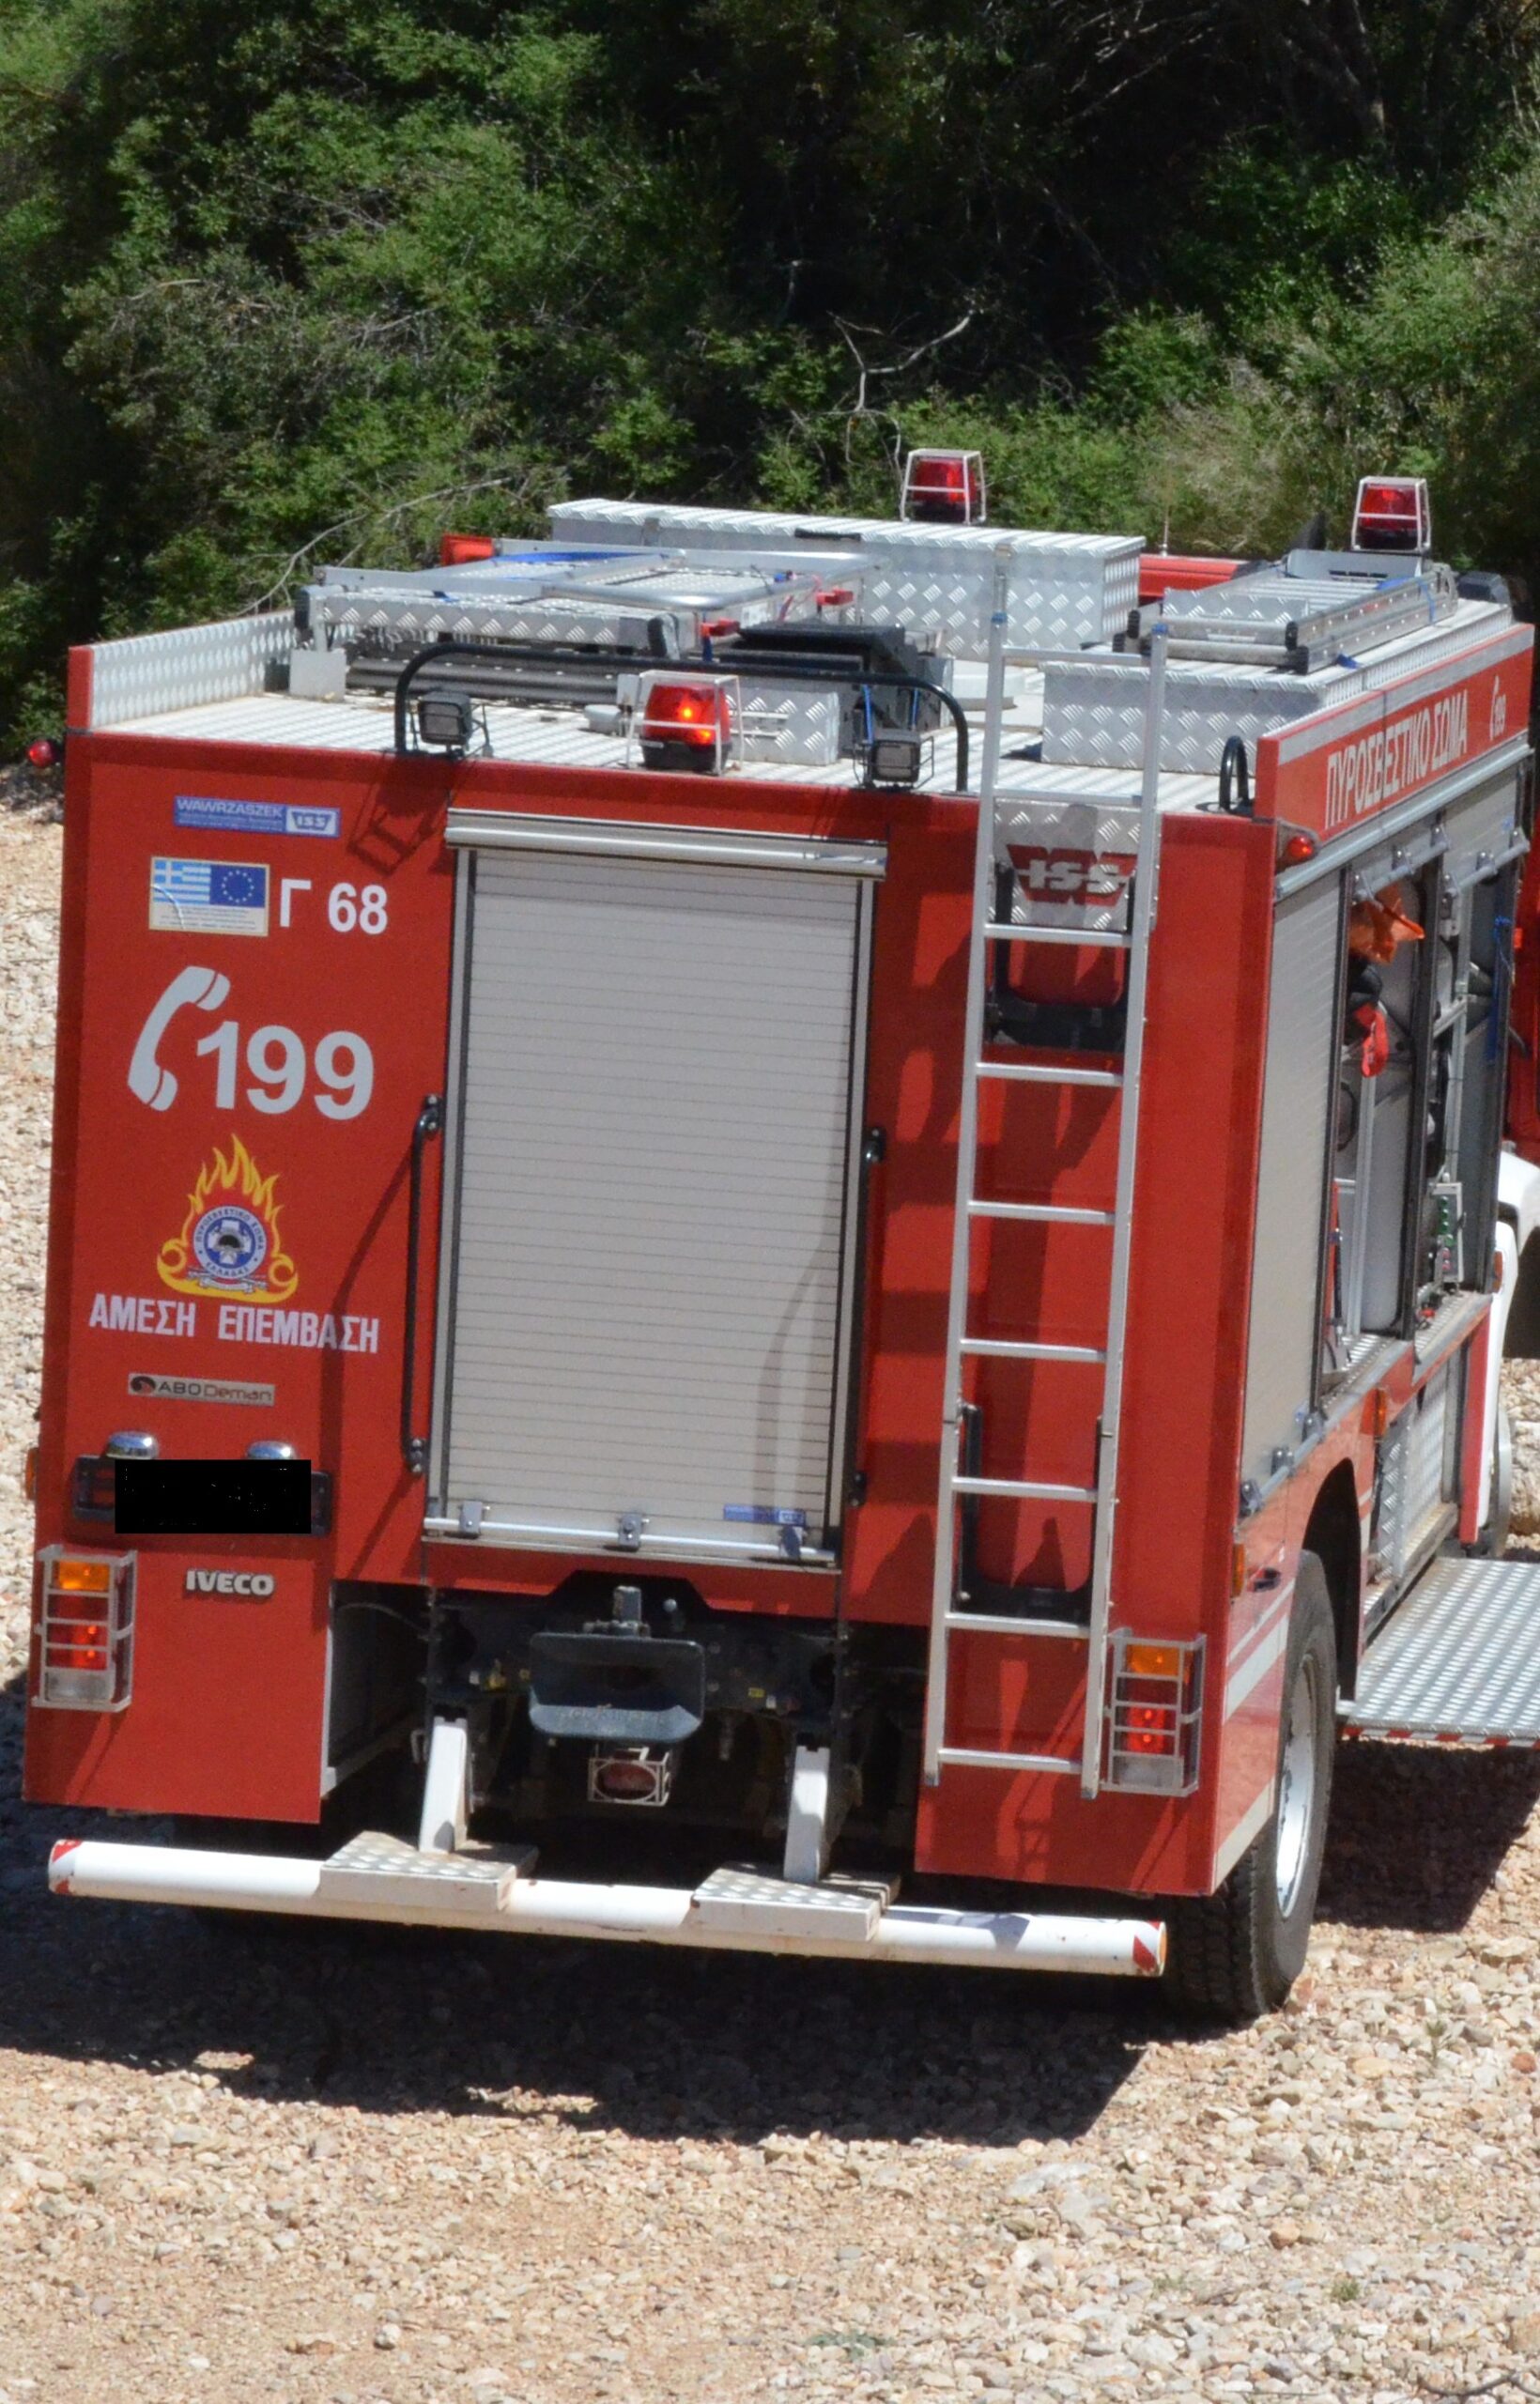 Χανιά: Φωτιά σε αυτοκίνητο στον Καλαθά -Τροχαίο με υλικές ζημιές στο όχημα της Πυροσβεστικής που κατευθύνονταν στο σημείο